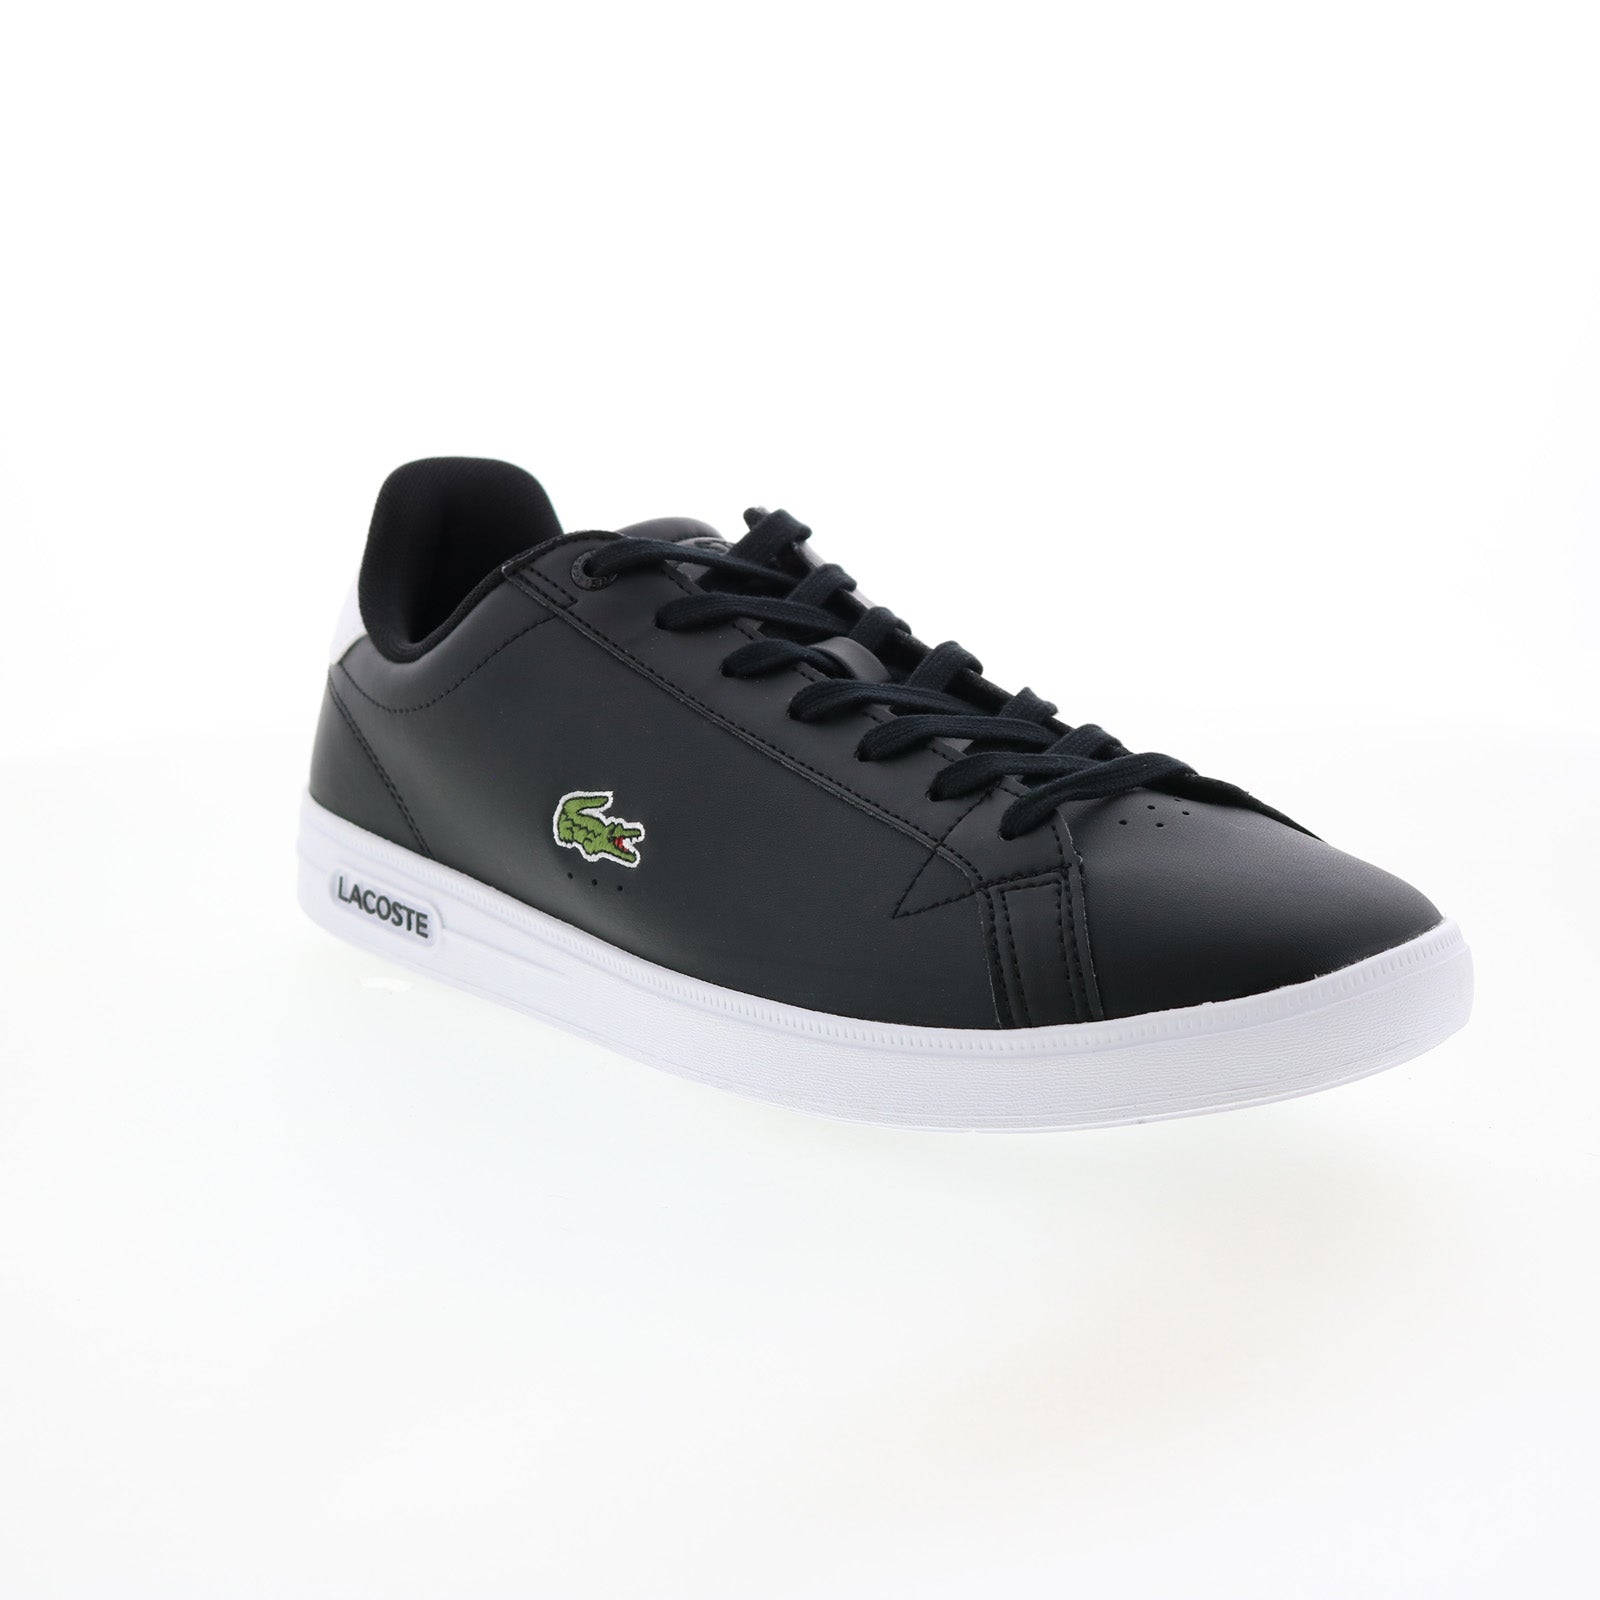 Lacoste Graduate Pro 222 1 Black Lifestyle Shoes - Ruze